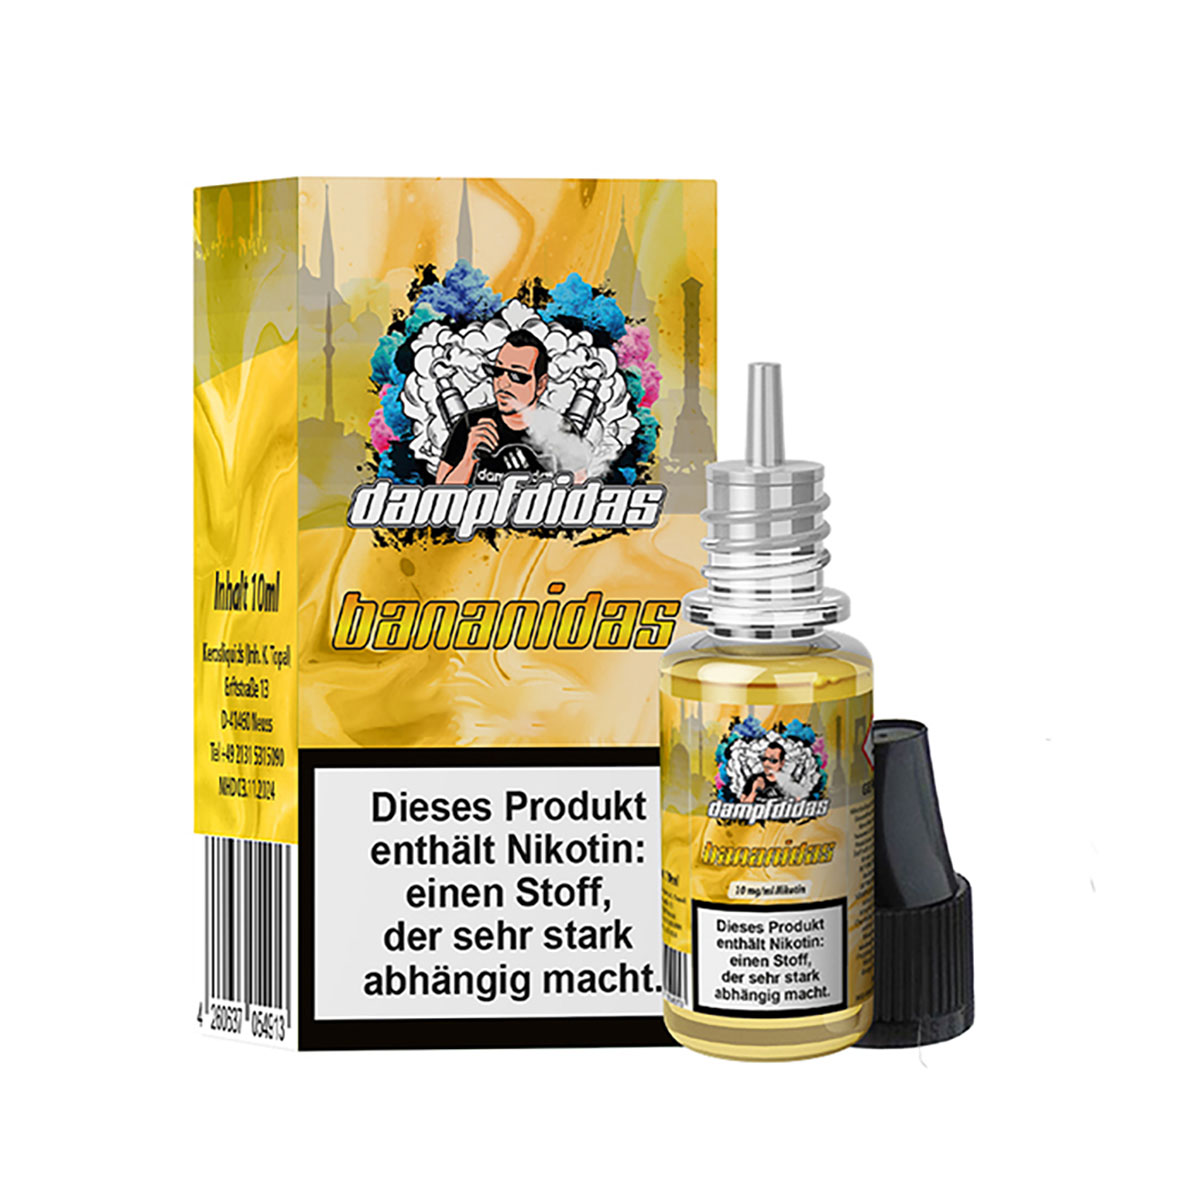 DAMPFDIDAS Bananidas 20mg/ml Nikotinsalz 10ml